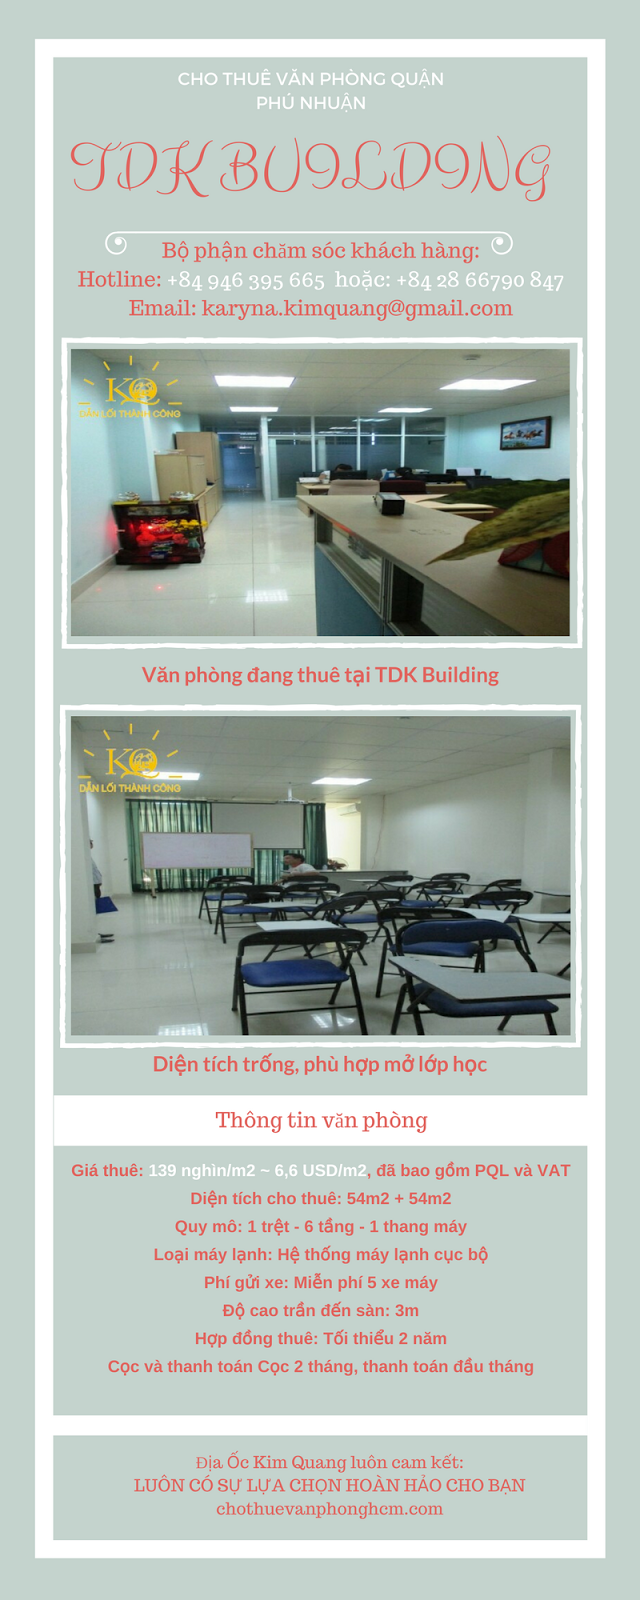 Cho thuê văn phòng quận Phú Nhuận TDK Building